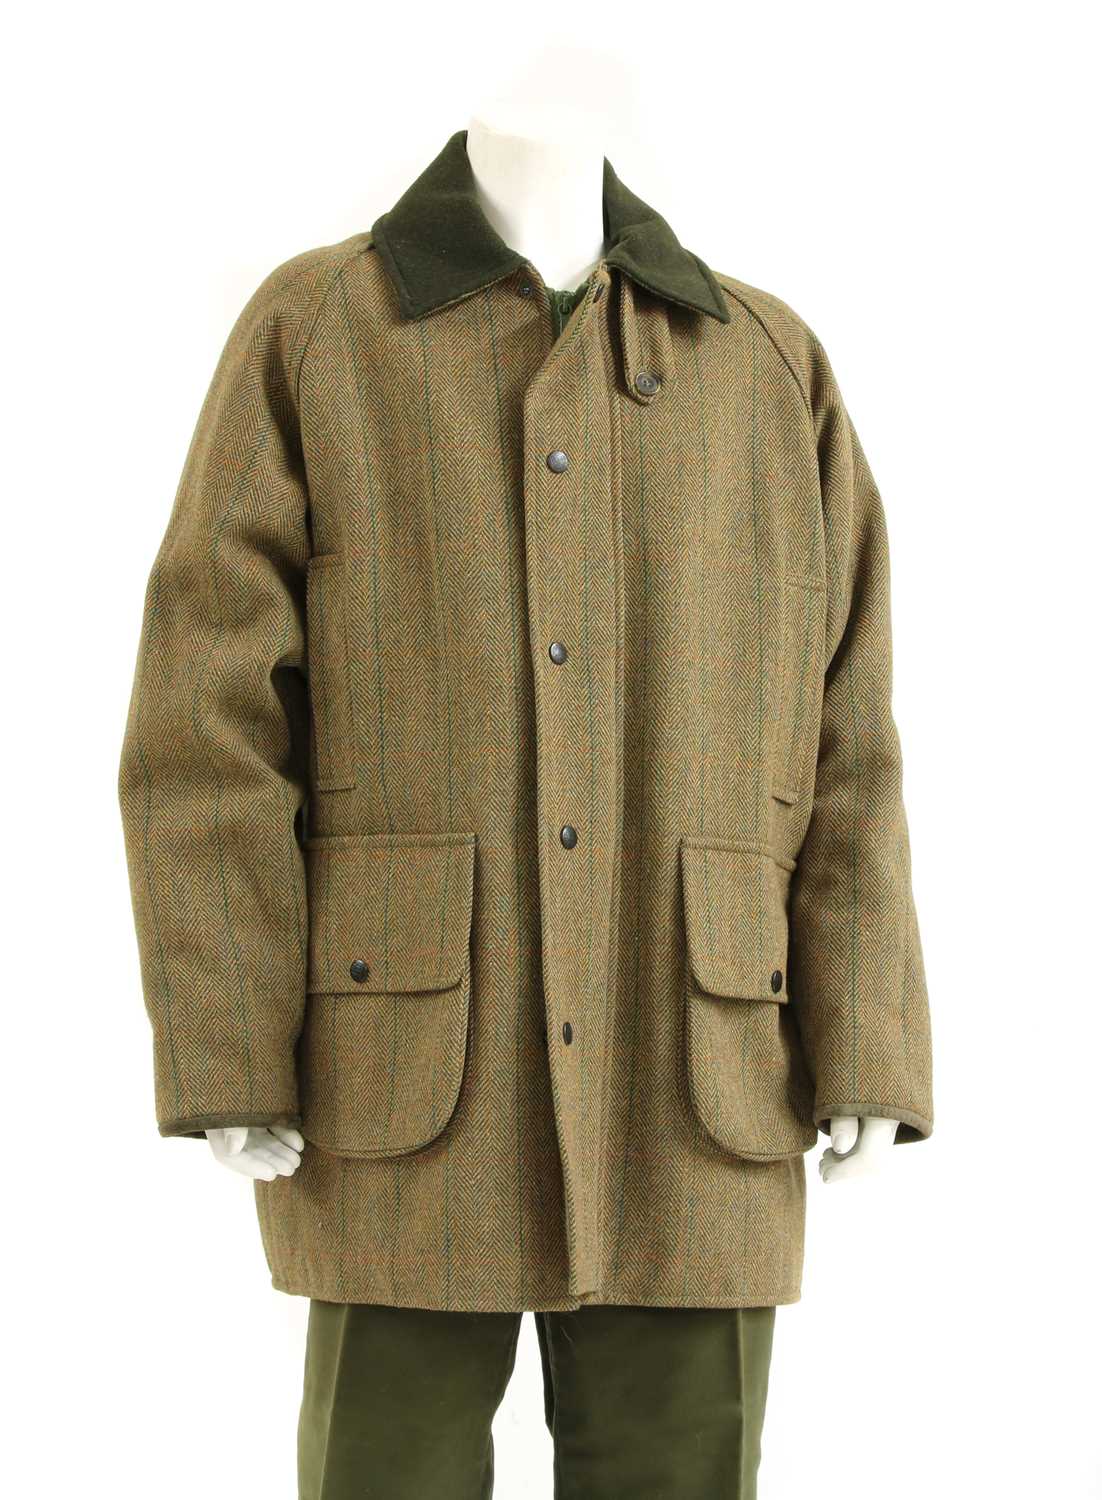 Lot 1162 - A William Evans gentleman's green tweed shooting jacket